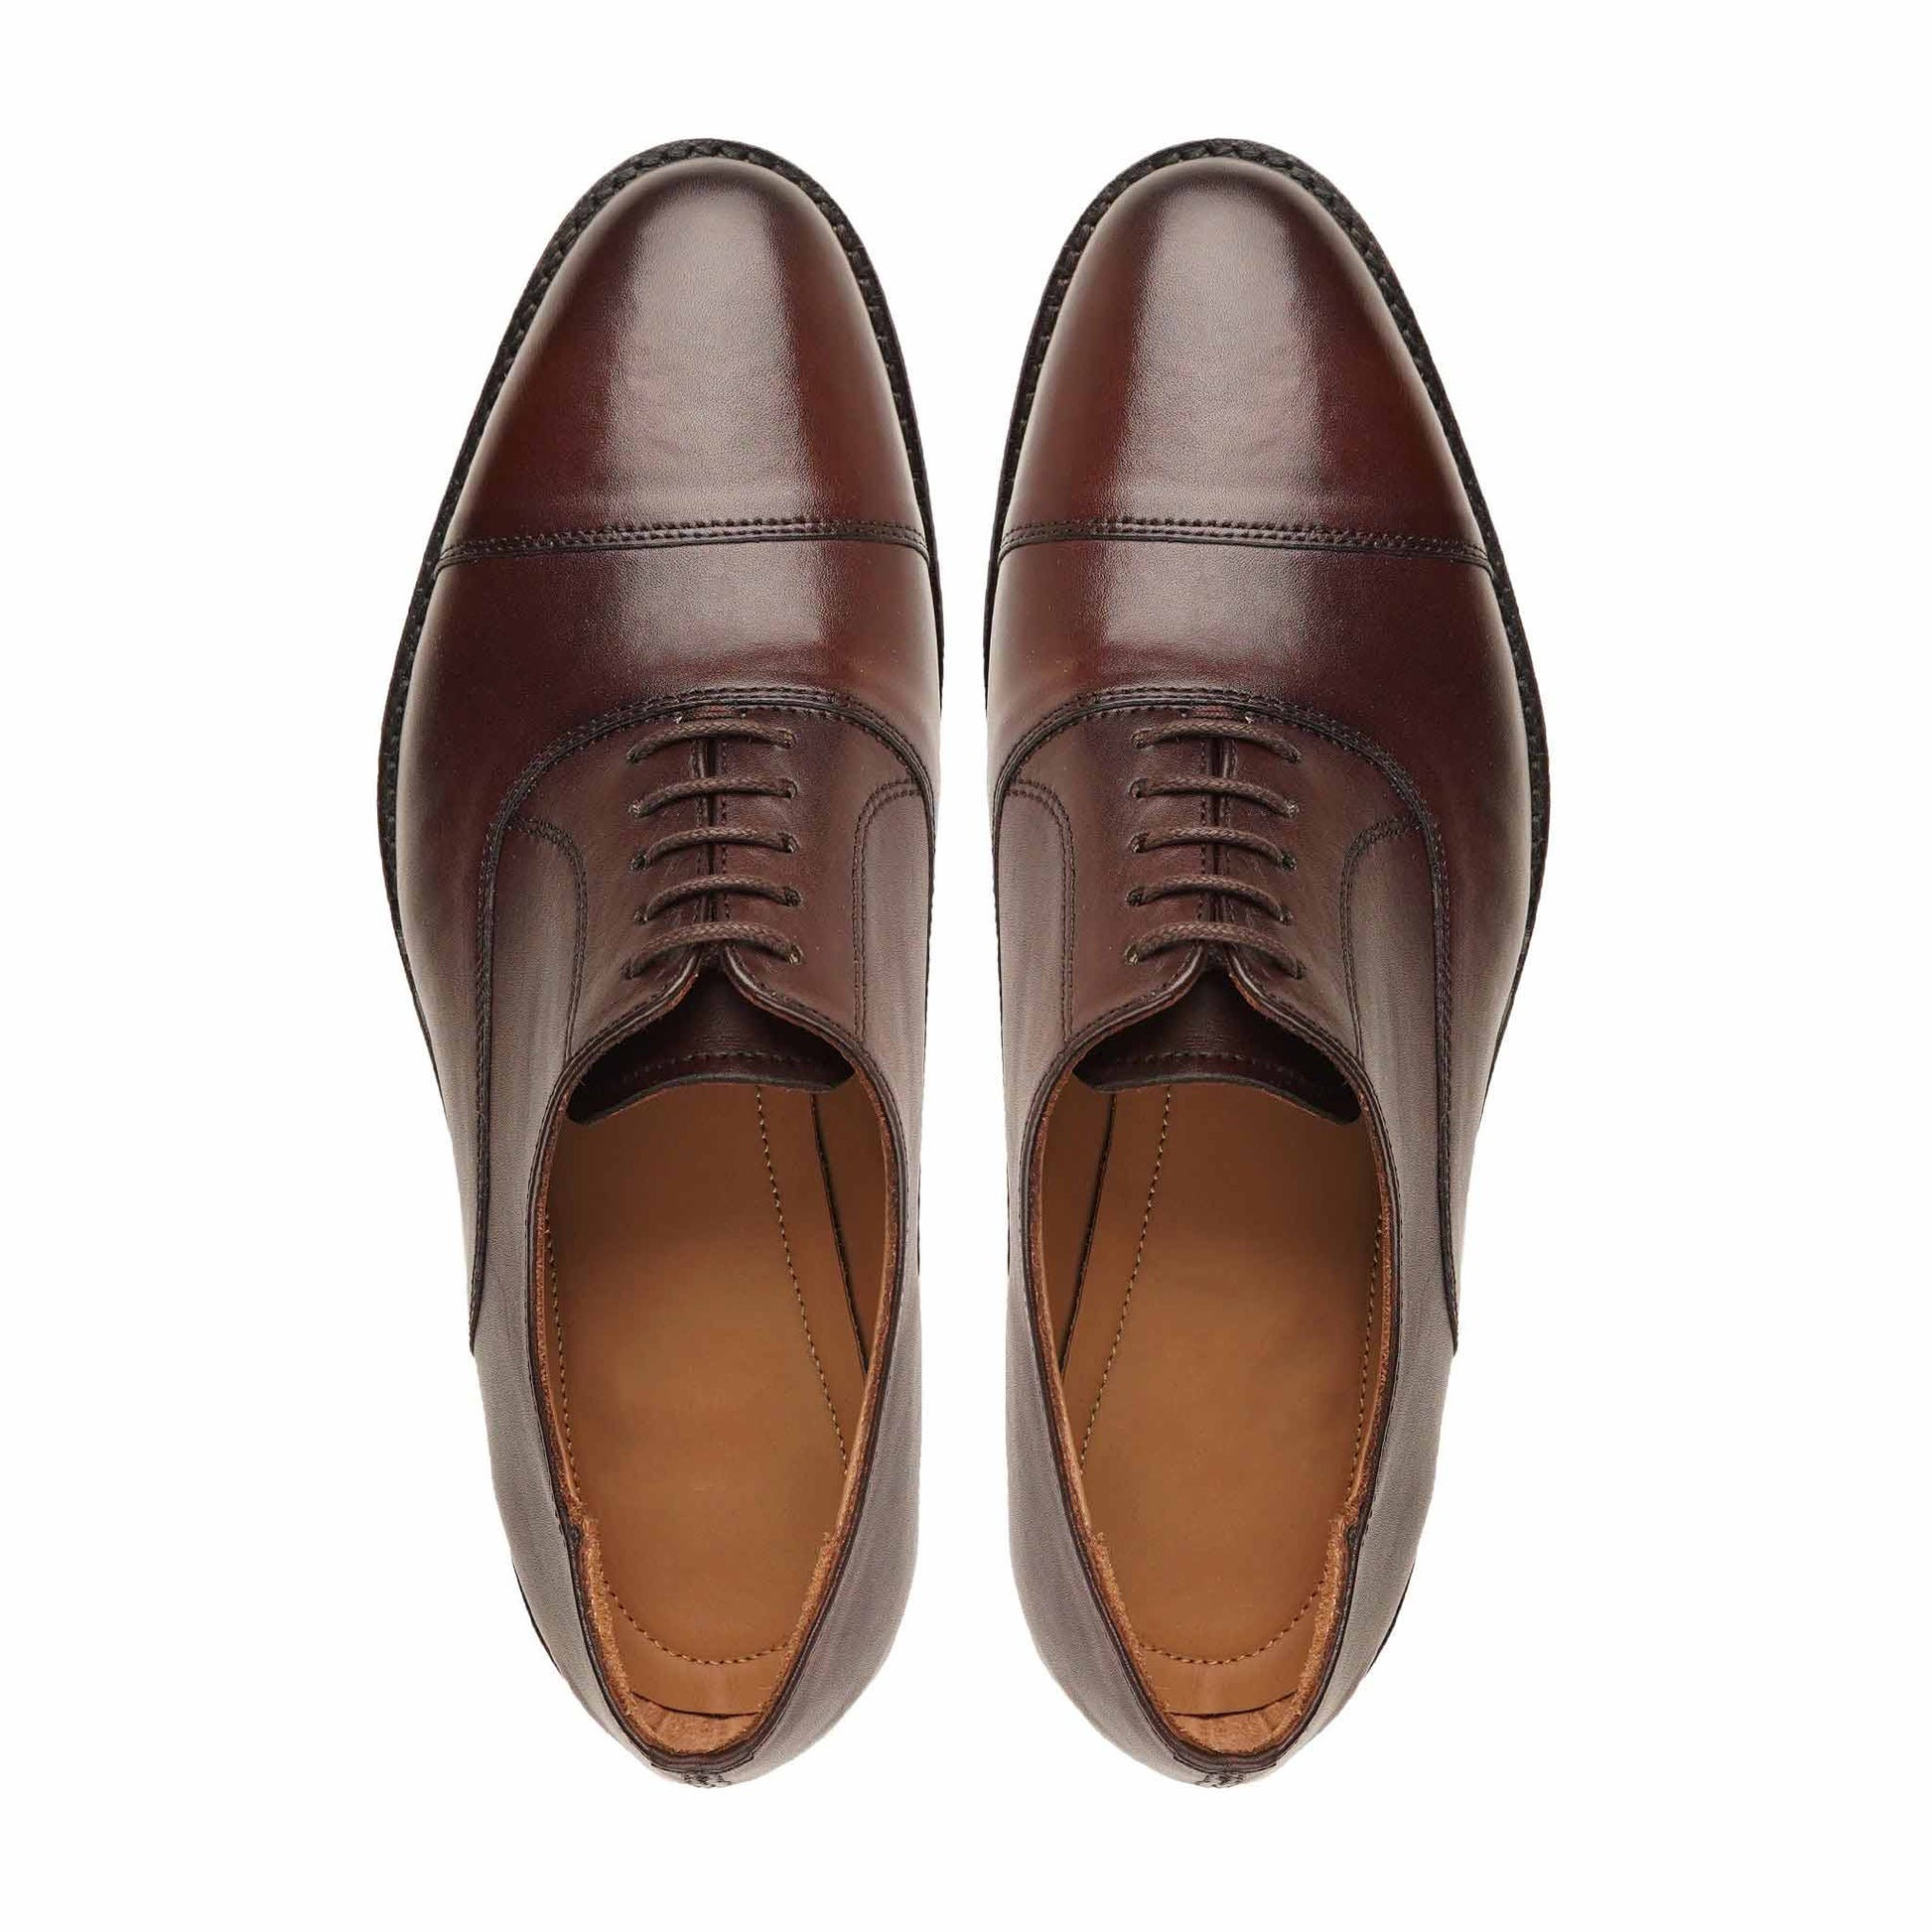 Men's Oxford Shoes | Men's Leather Oxford Shoes Leather Boots, Men's Leather Oxford Shoes, Men's Oxford Shoes